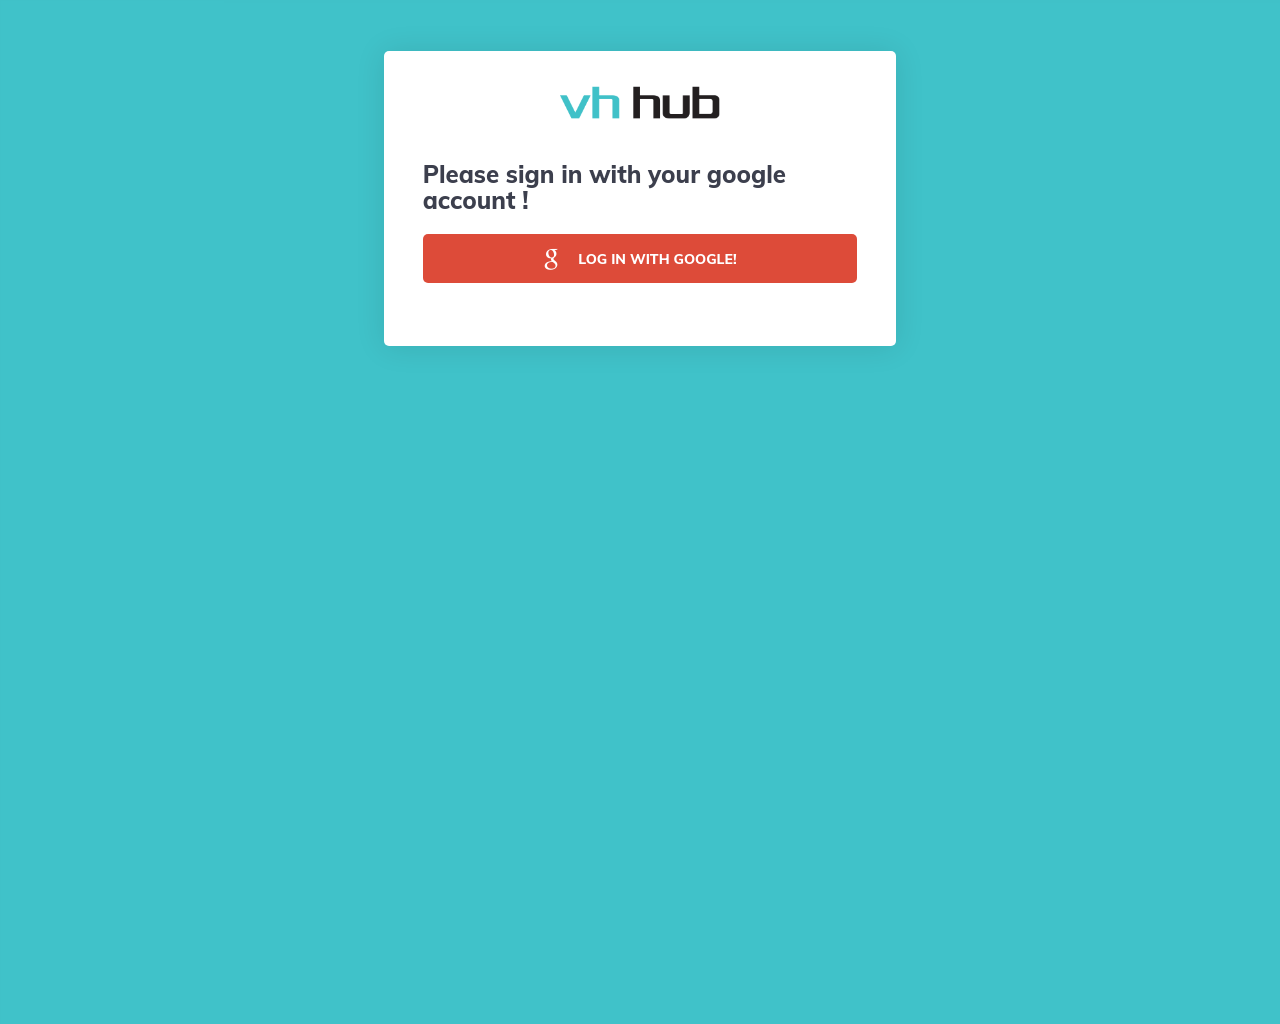 vhhub.com